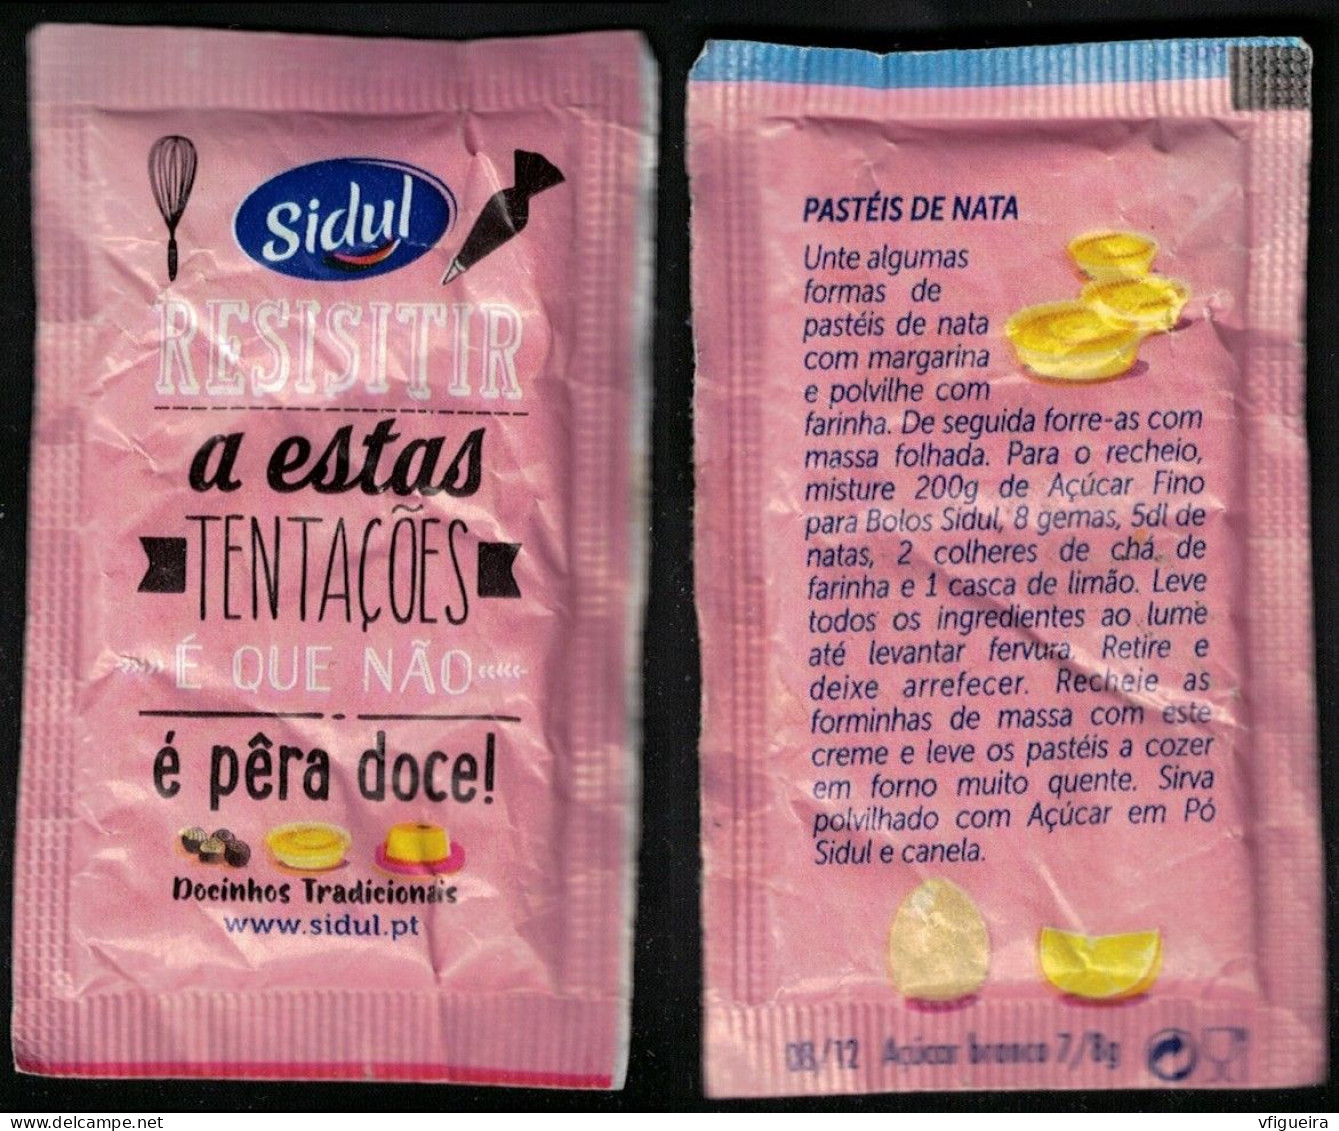 Portugal Sachet Sucre Sugar Bag Sidul Resistir A Estas Tentações é Que Não é Pêra Doce Pastéis De Nata - Zucker